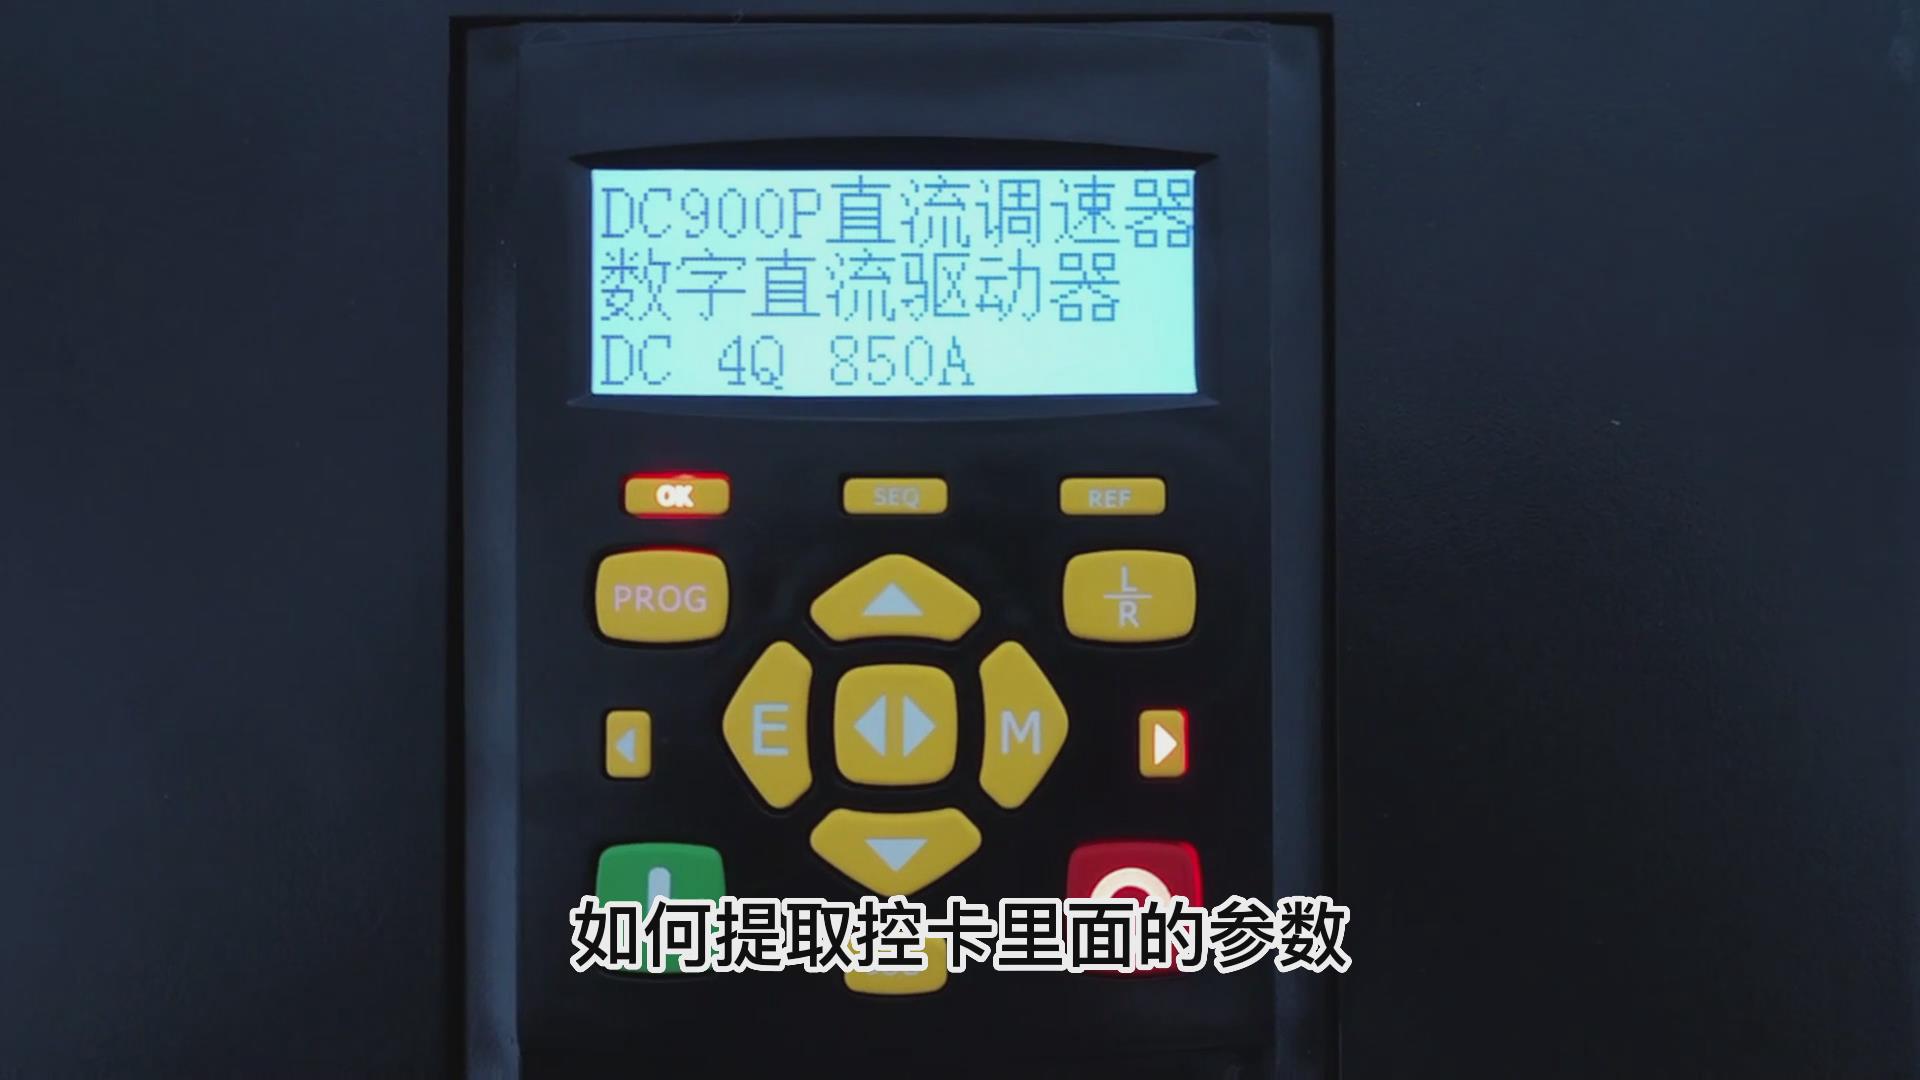 DC900P直流调速器如何用手操板保存下载参数？ 仁控机电！